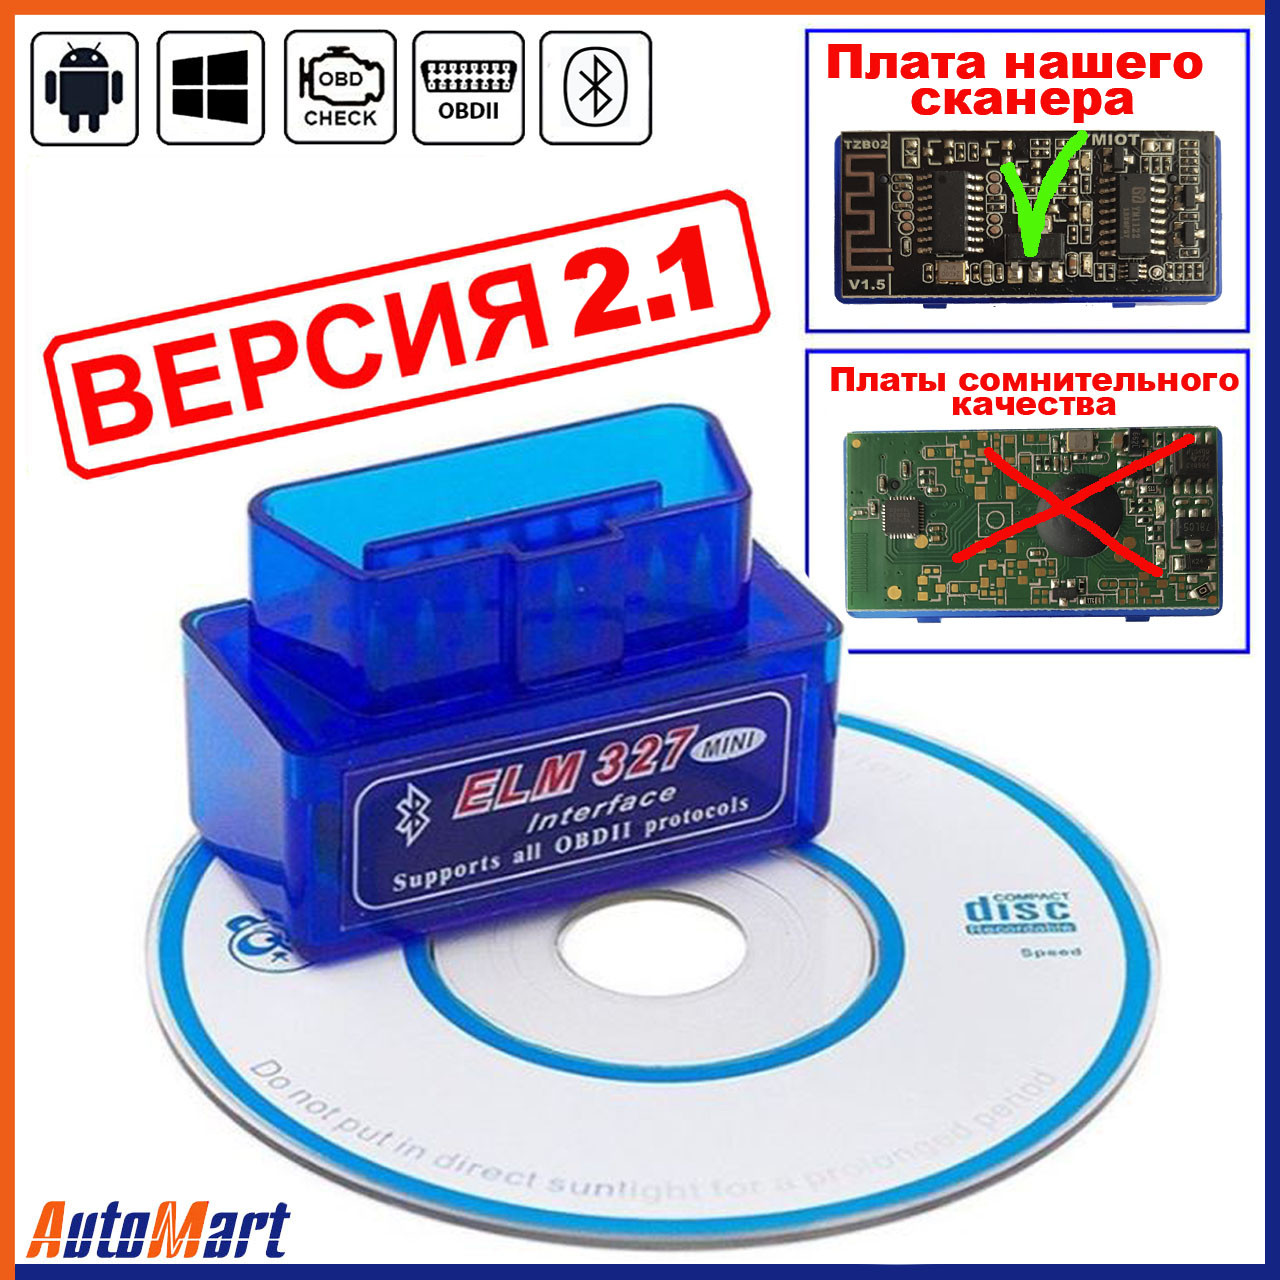 Архив ELM327 mini v 2.1 Bluetooth OBD2 сканер адаптер для диагностики  автомо: 165 грн. - Авторемонтное оборудование Бердянск на BON.ua 77434872